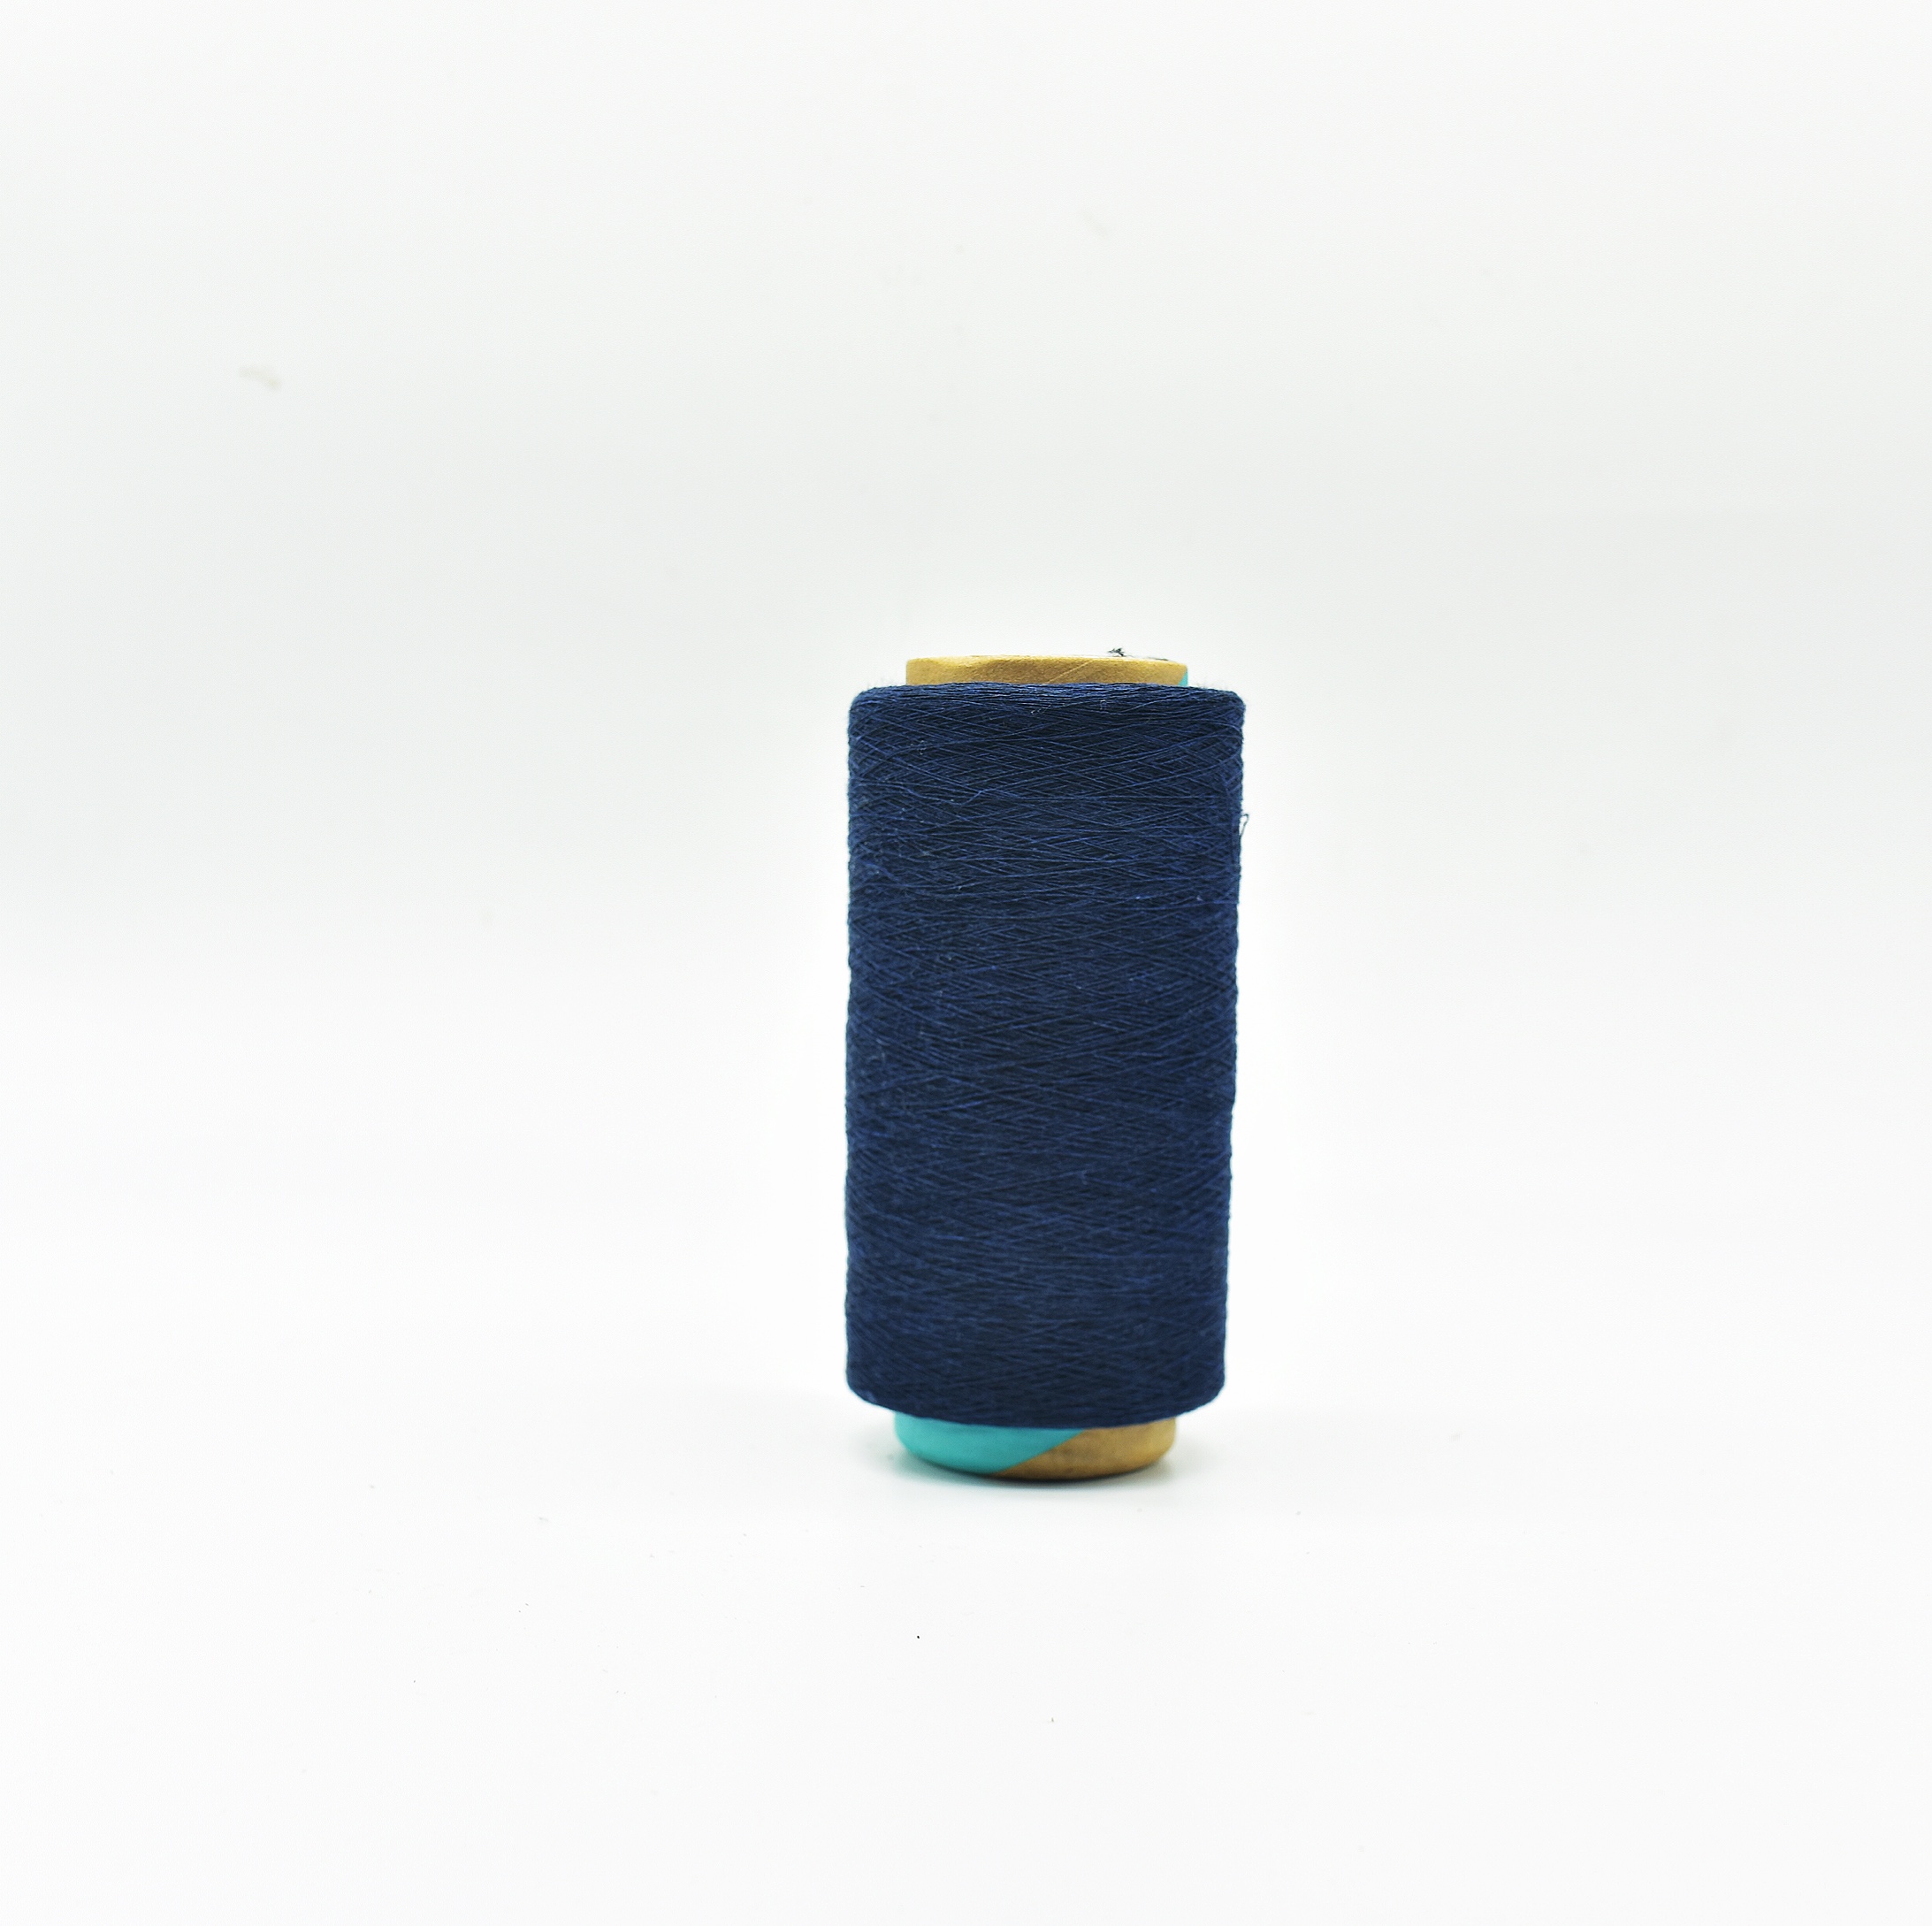 NE 12S fio de algodão reciclado azul marinho para meias de tricô